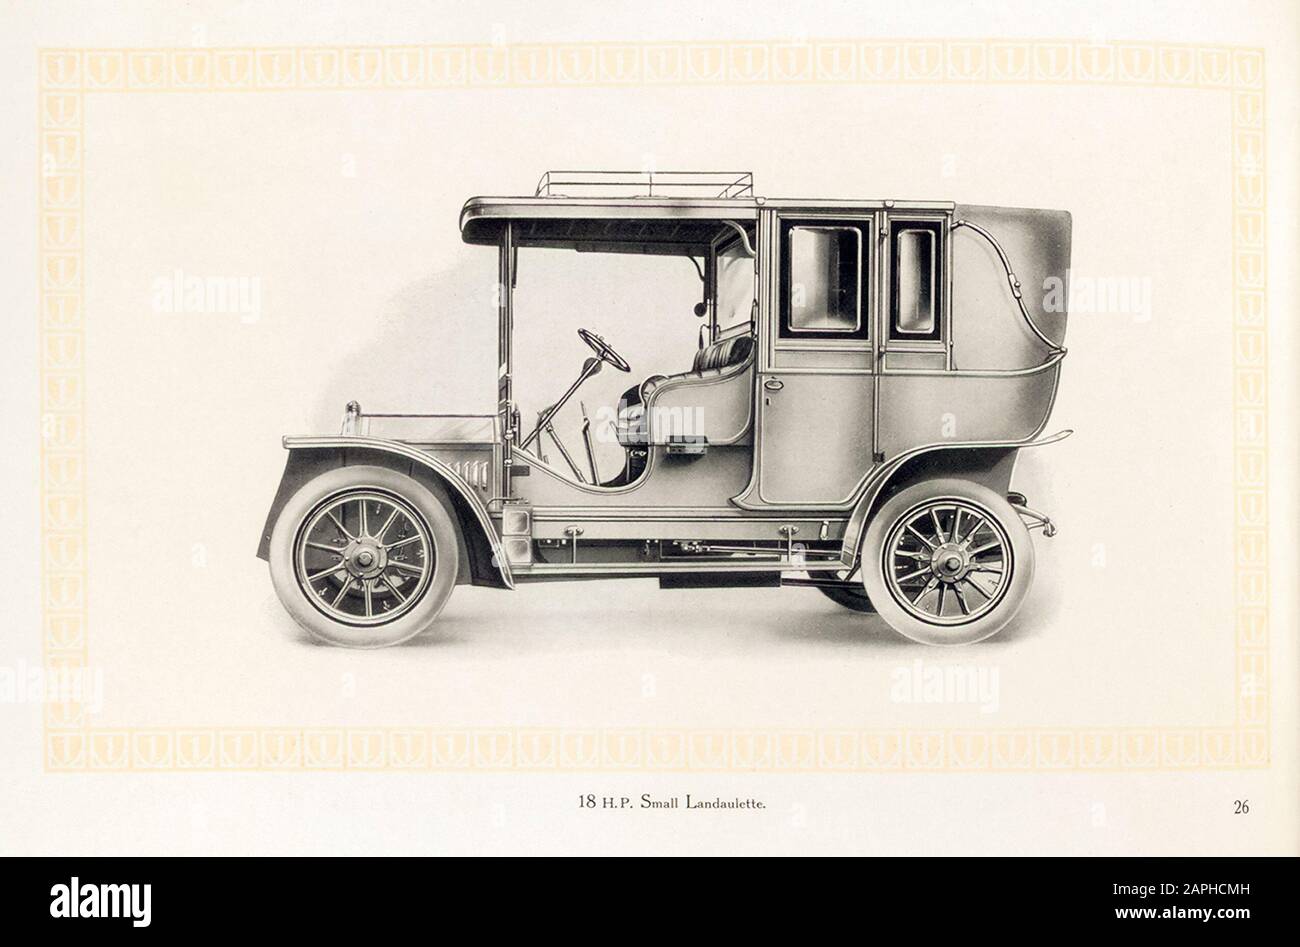 Auto d'epoca, auto a motore Benz, 18 hp piccolo Landaulette, dal catalogo commerciale Benz & Co, illustrazione 1909 Foto Stock